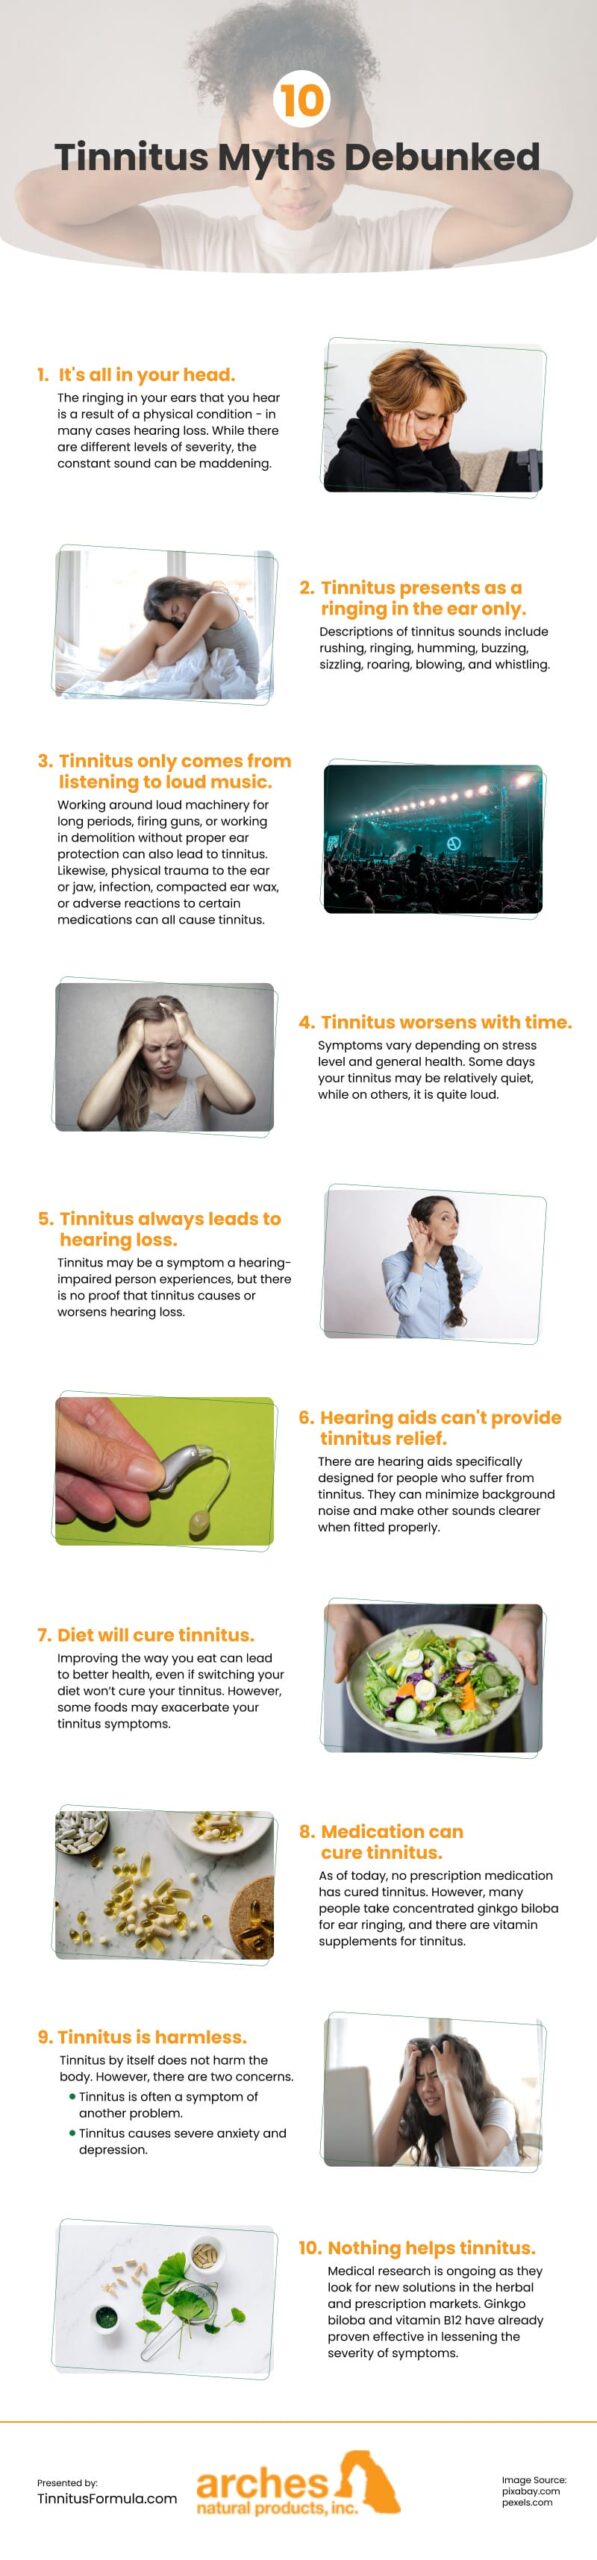 10 Tinnitus Myths Debunked Infographic